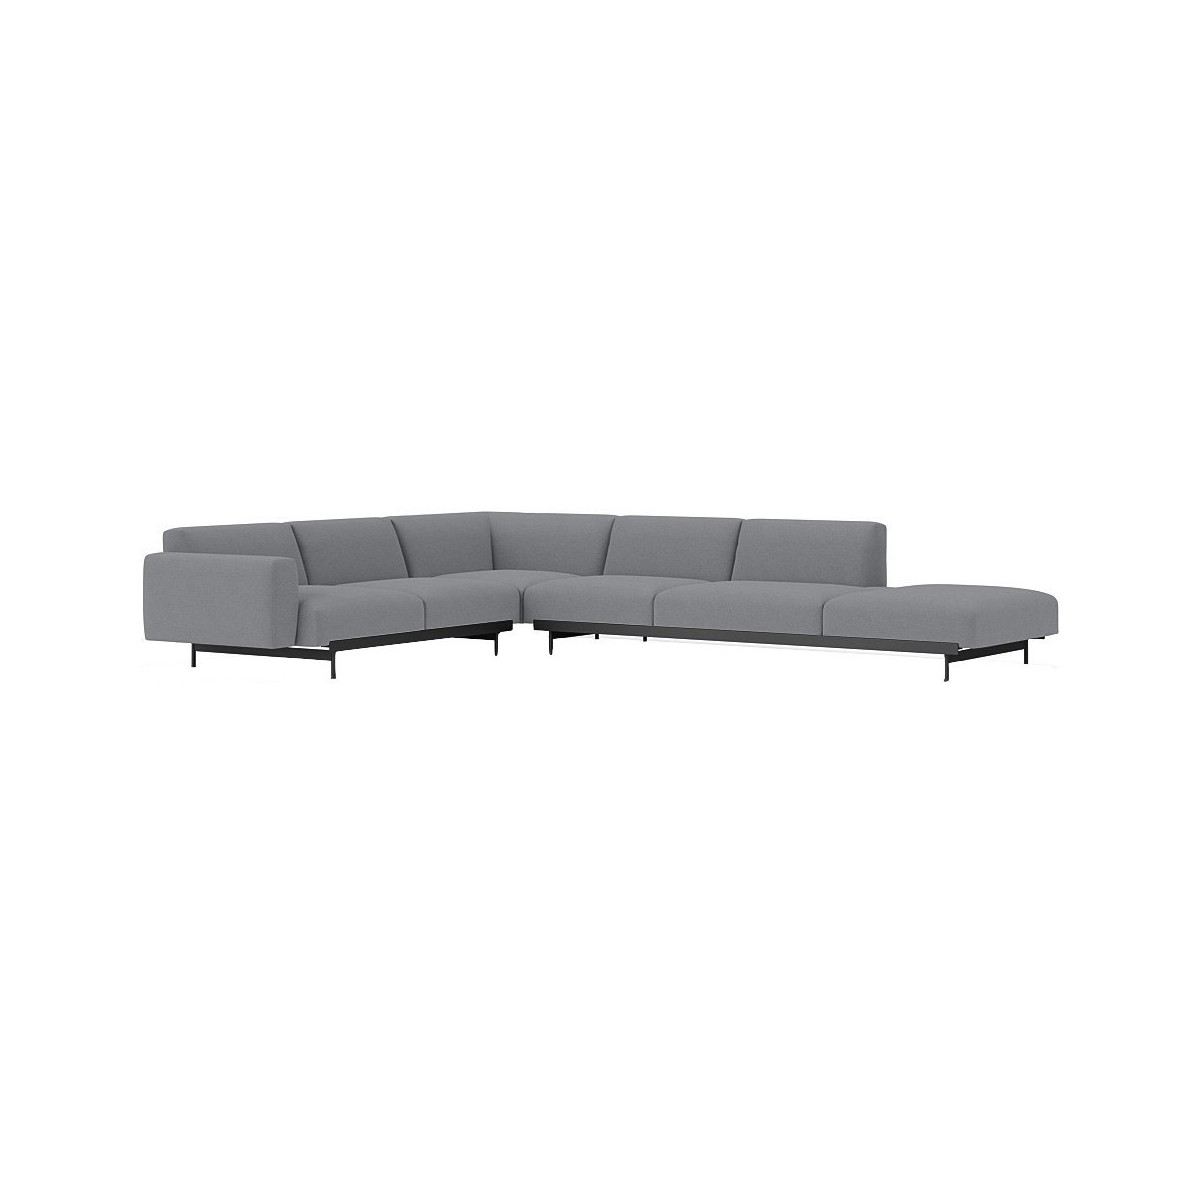 Ocean 80 / black – In Situ corner sofa / configuration 7 – 368 x 287 cm